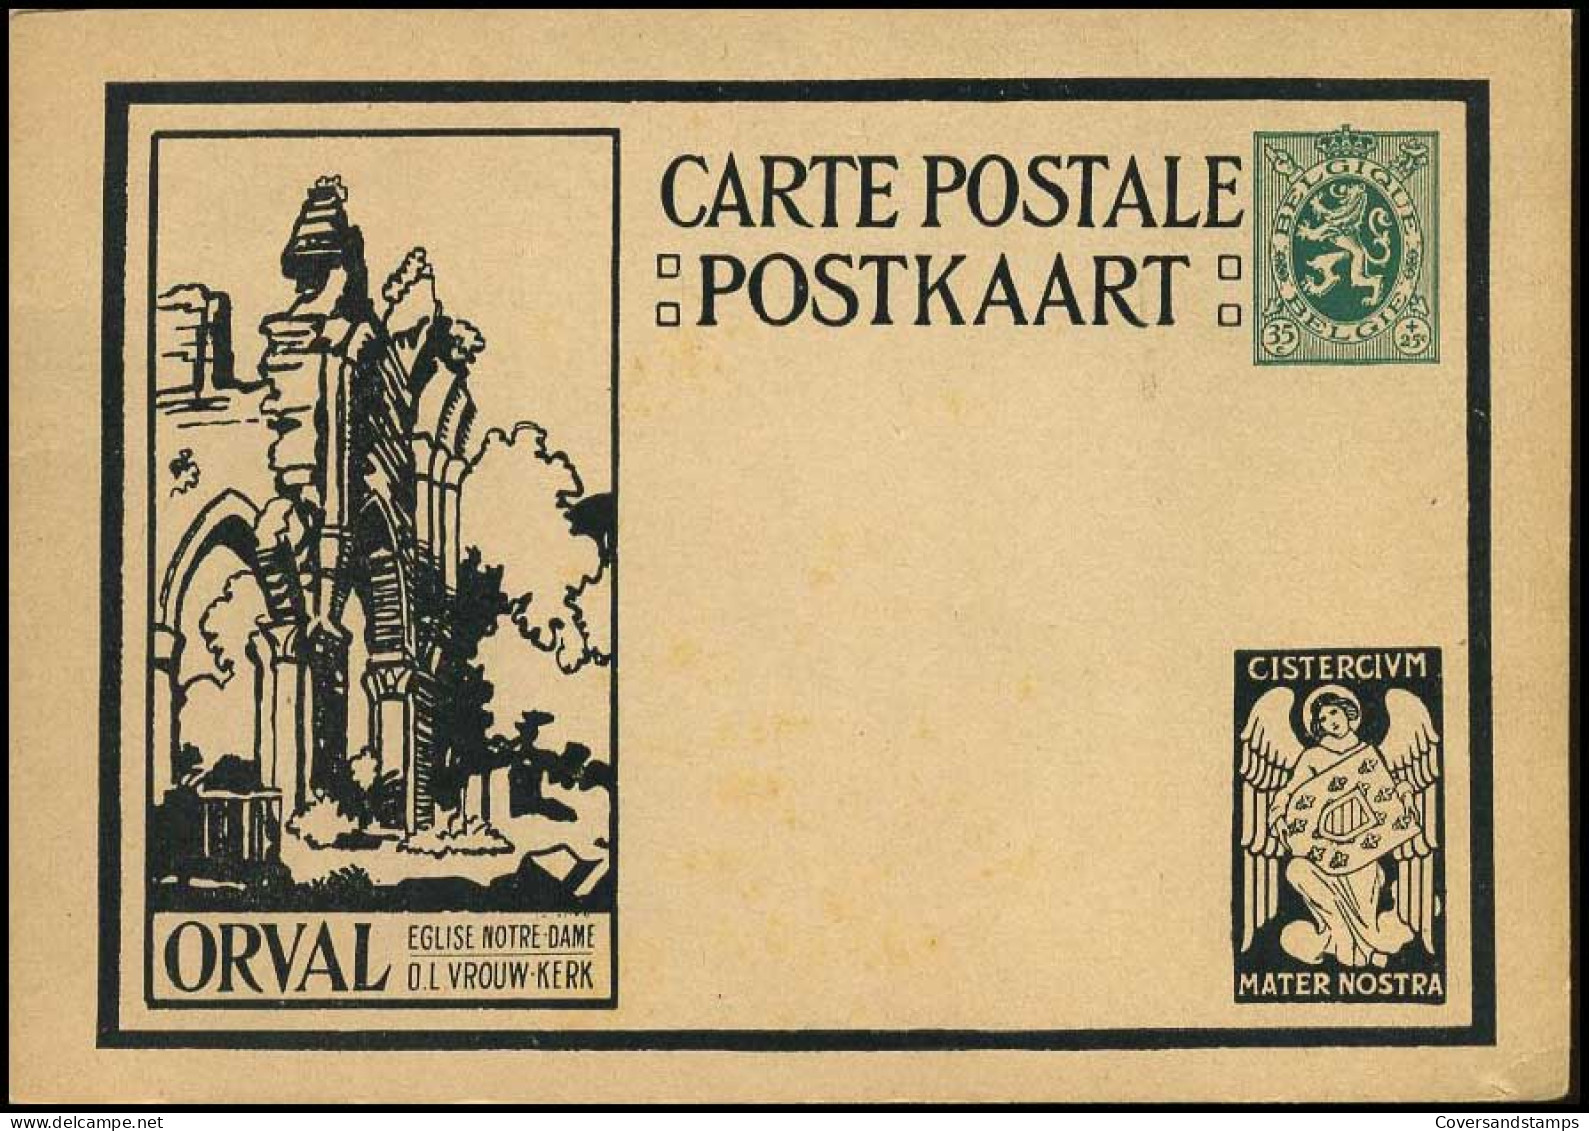 Postkaart - Orval, O.L. Vrouw Kerk - Illustrierte Postkarten (1971-2014) [BK]